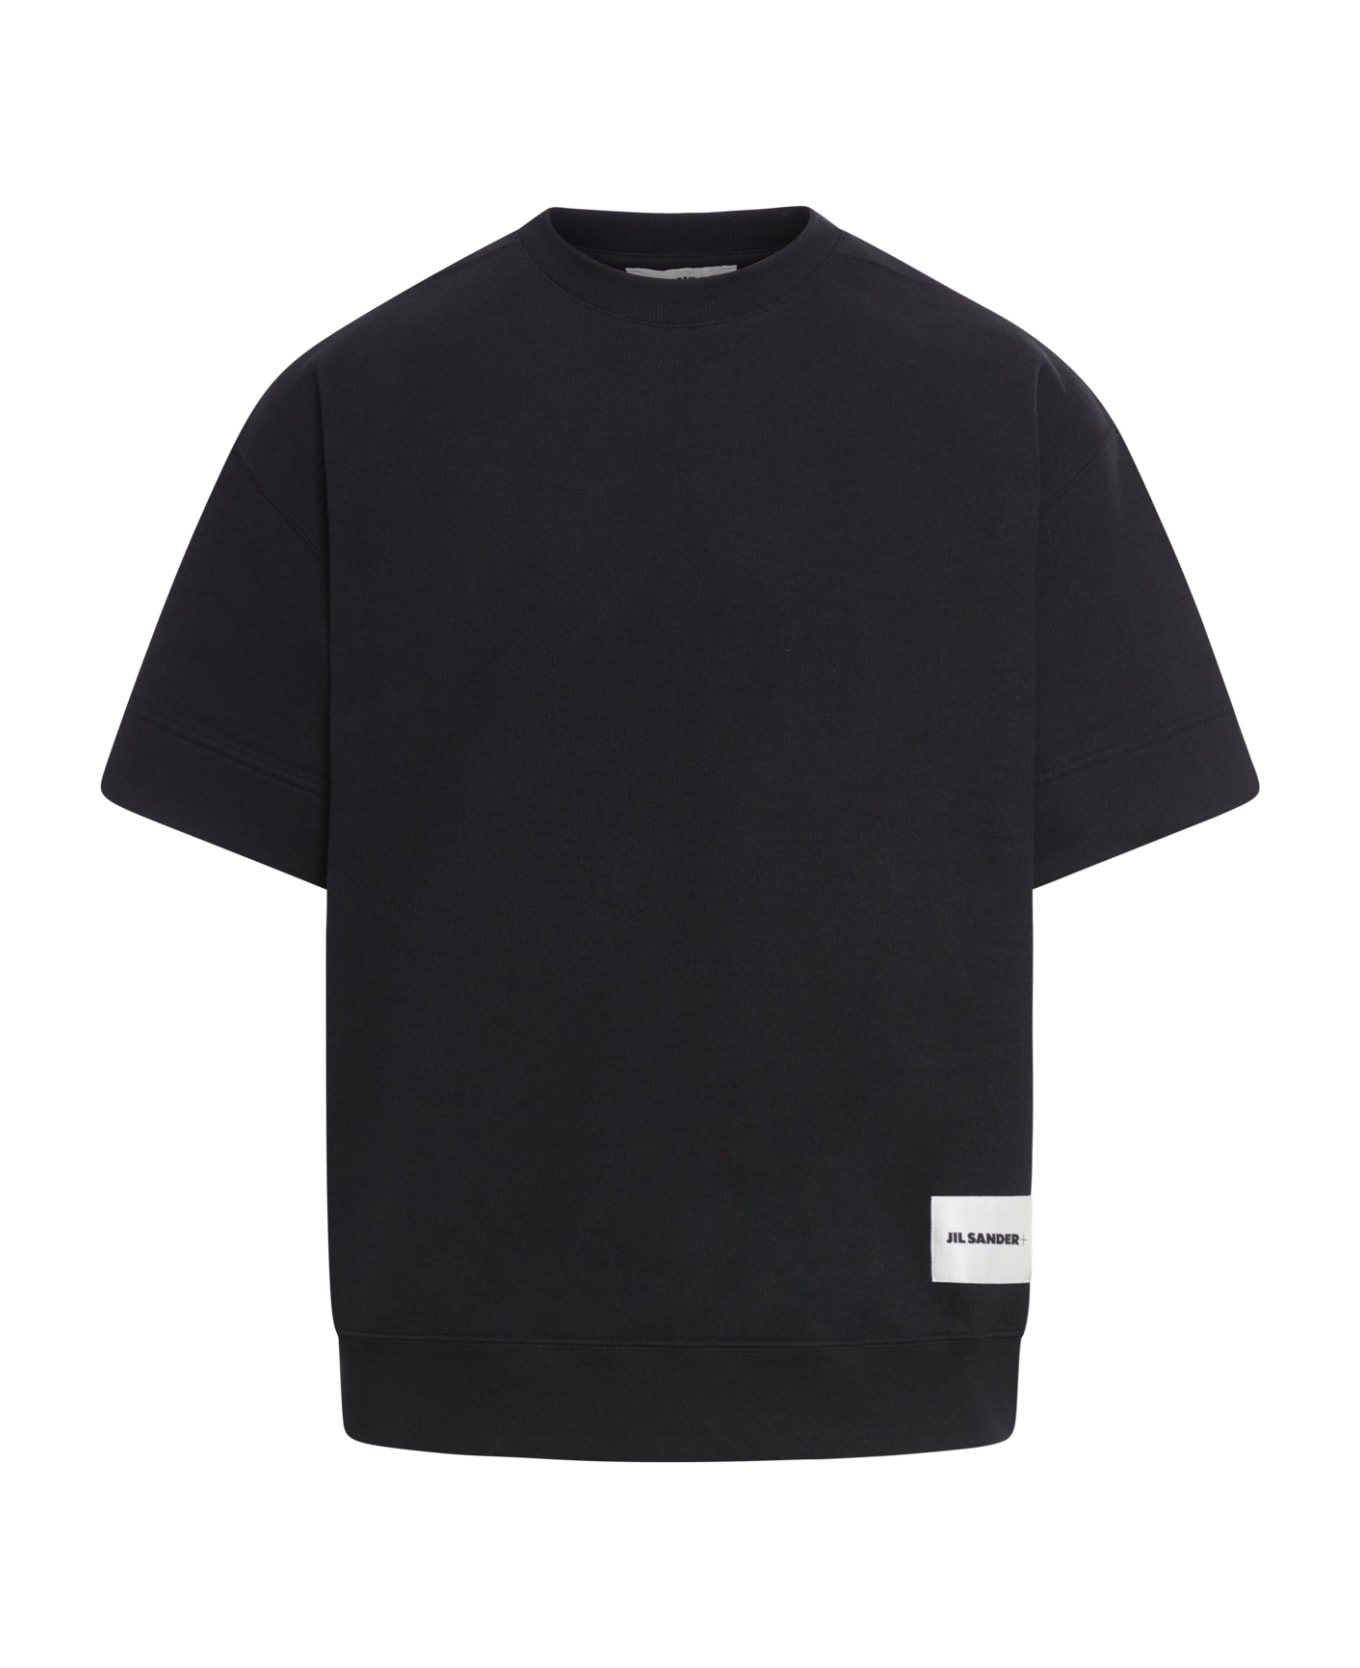 Jil Sander Crew Neck Short Sleeves Sweatshirt - Black